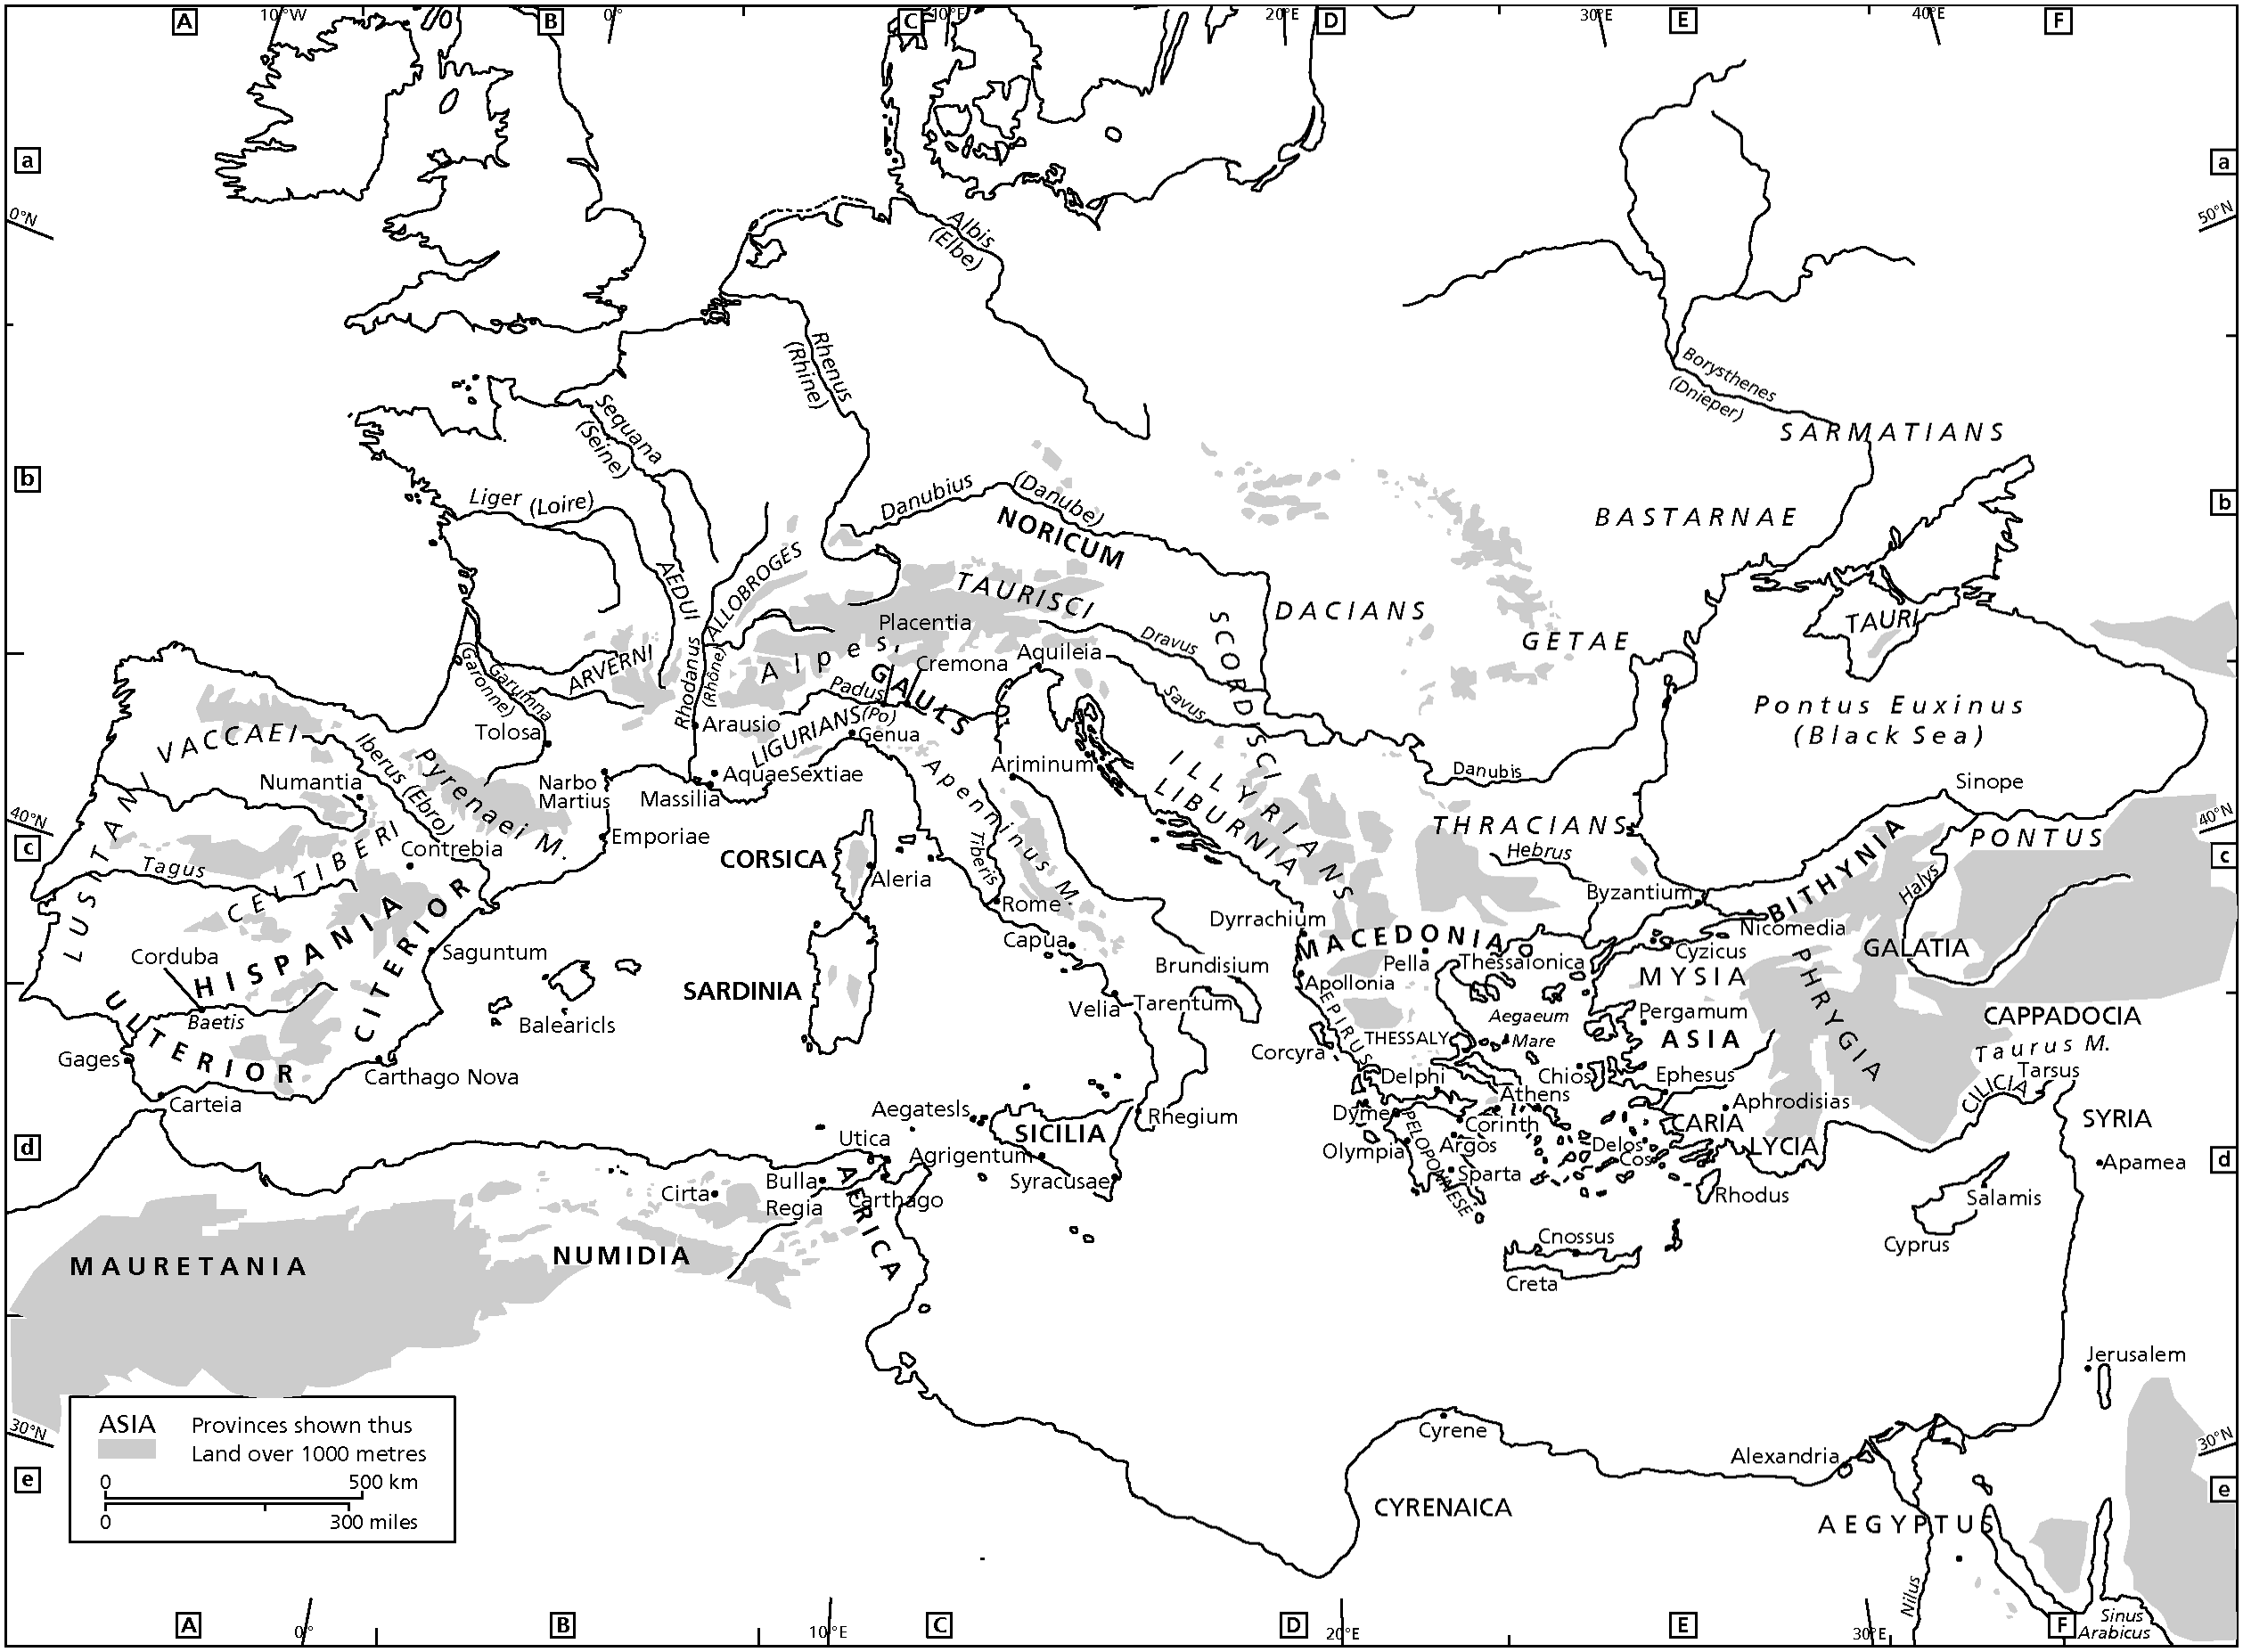 Rome S Empire Part 3 The Cambridge Companion To The Roman Republic